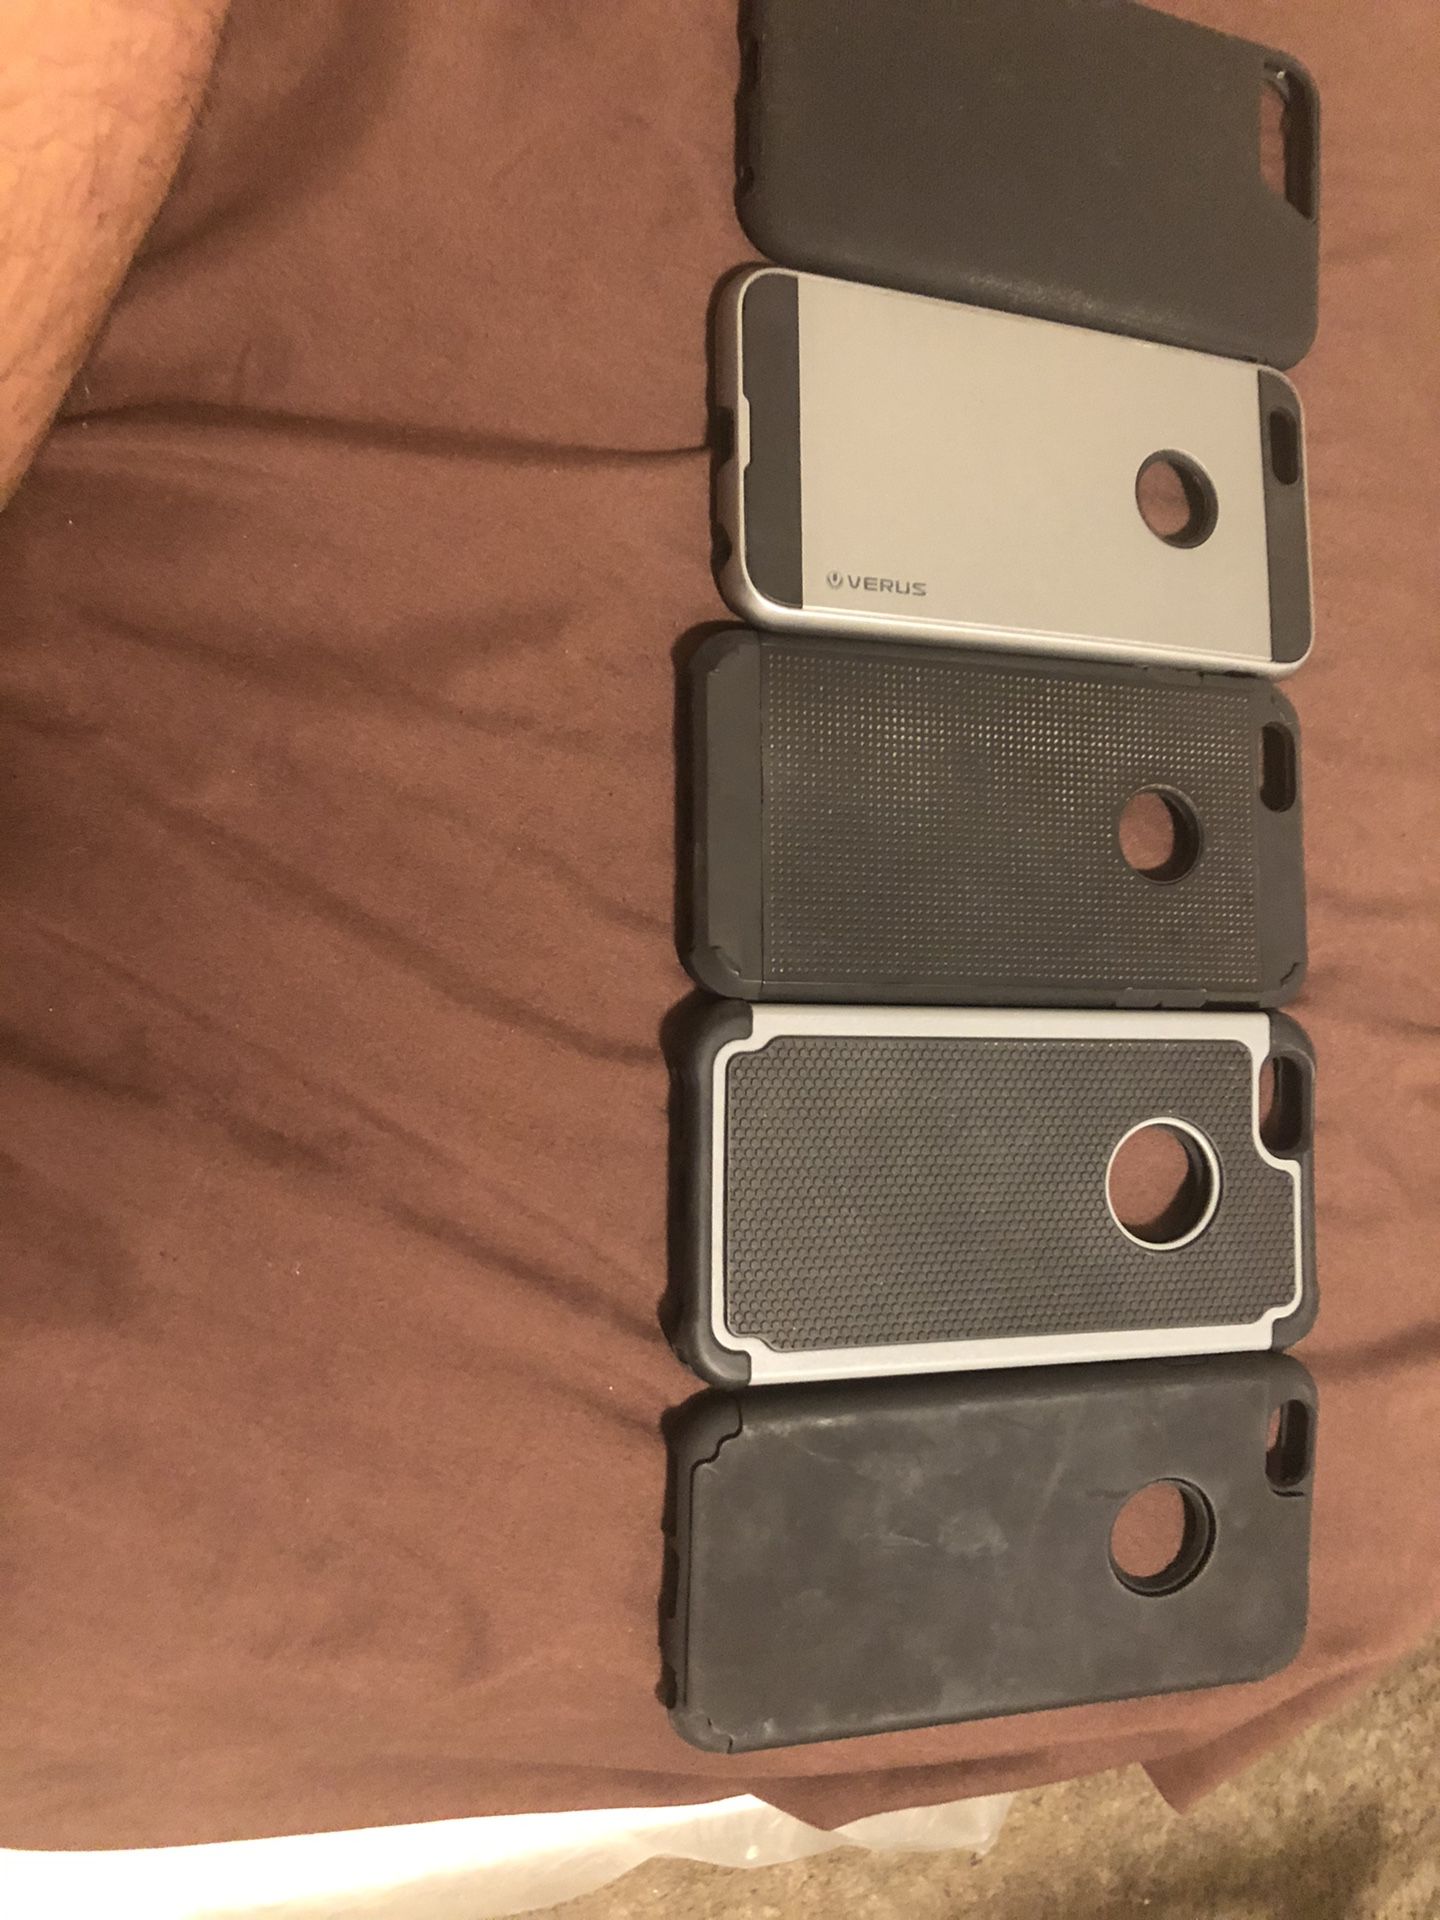 IPhone 6s Plus cases